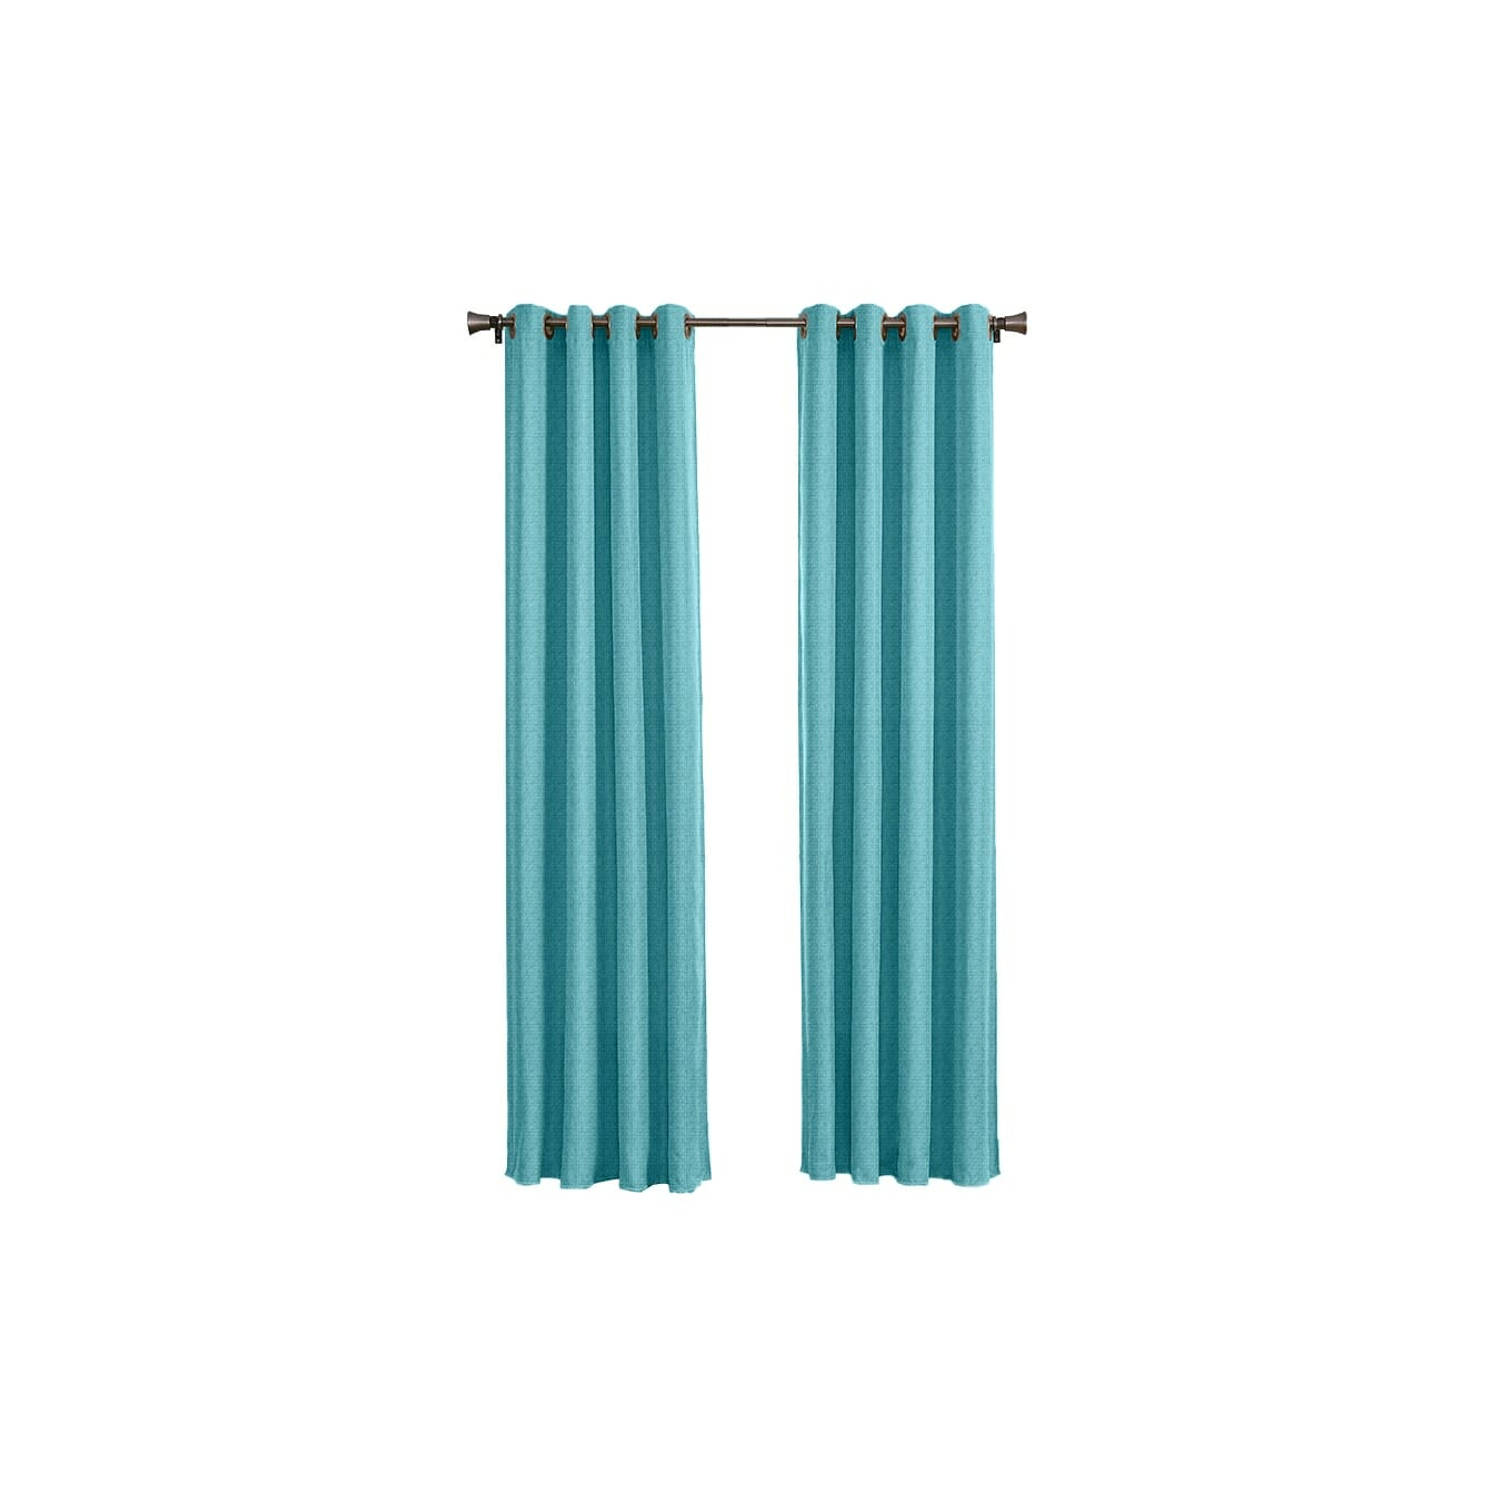 Larson - Luxe geweven blackout gordijn - met ringen - 1.5m x 2.5m - Mint-turquoise